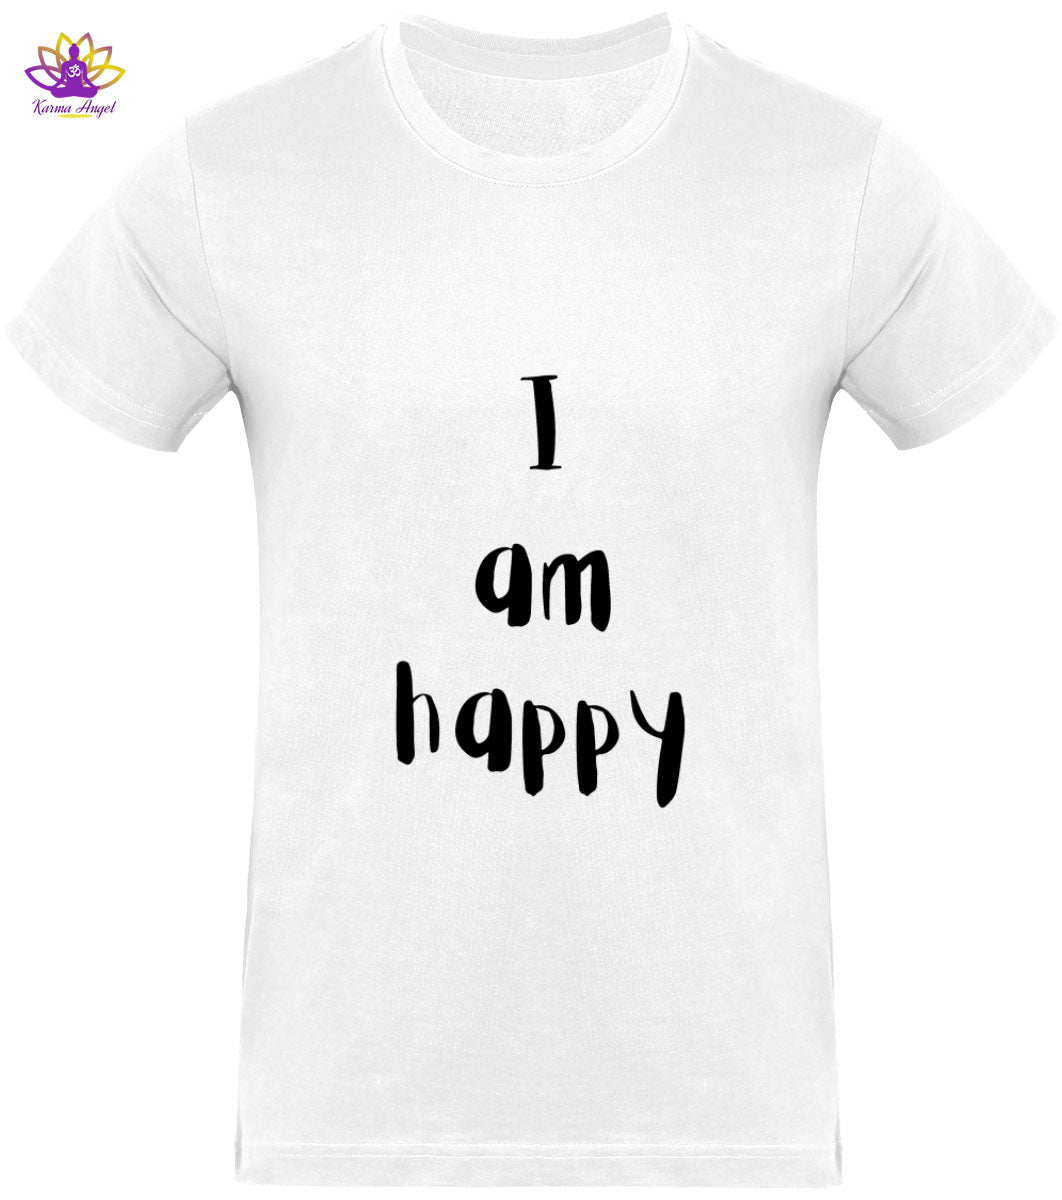 "I am happy" - T-shirt homme inspirant en coton bio, plusieurs coloris 